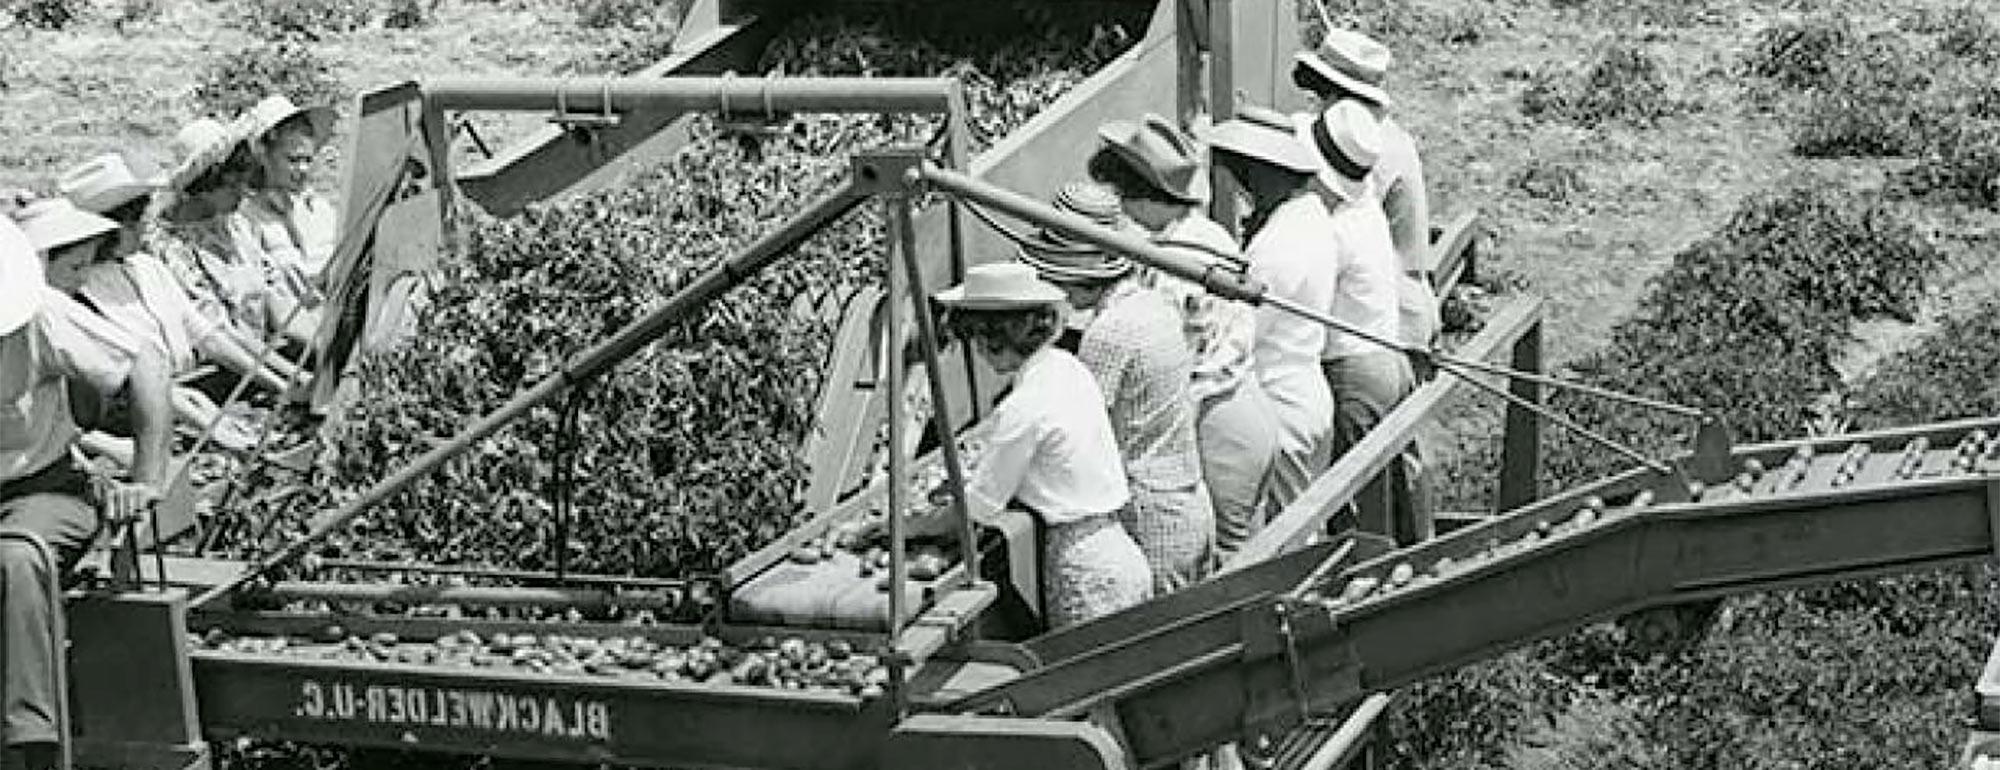 这是一张大约在上世纪中叶拍摄的历史照片，照片中的妇女戴着遮阳帽，在机械收割机的帮助下收割西红柿